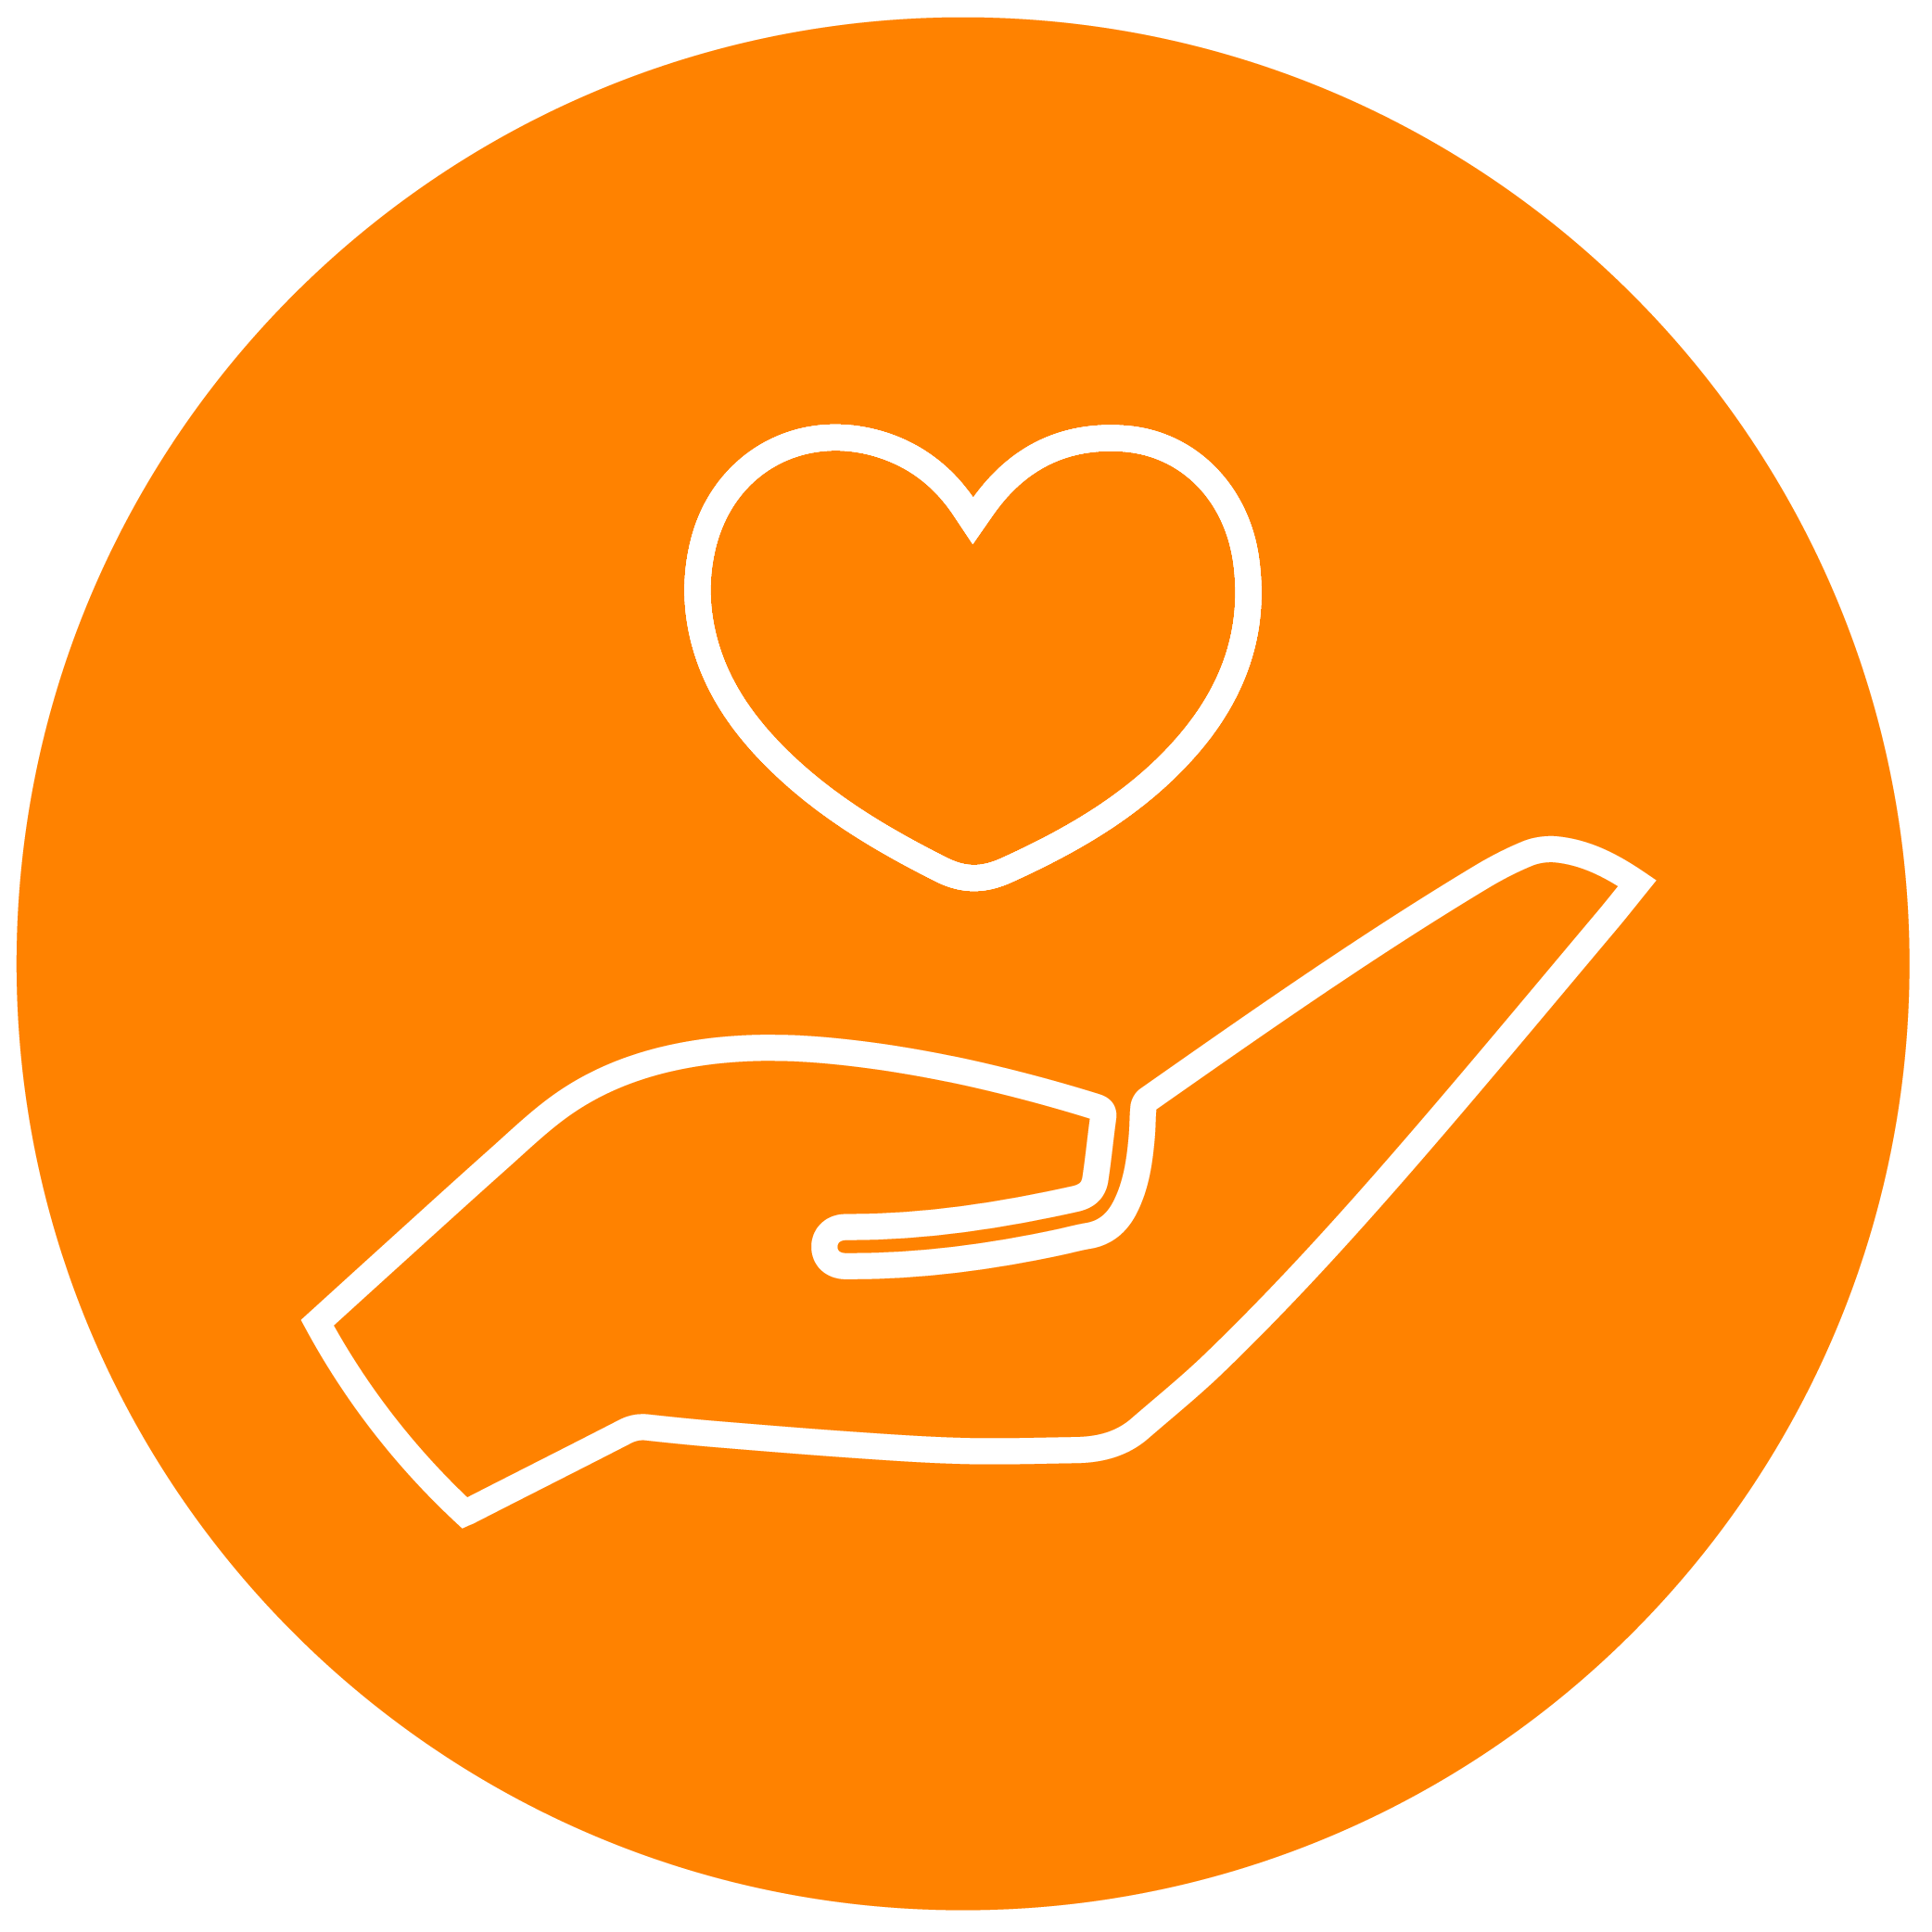 White hand holding heart icon on orange background